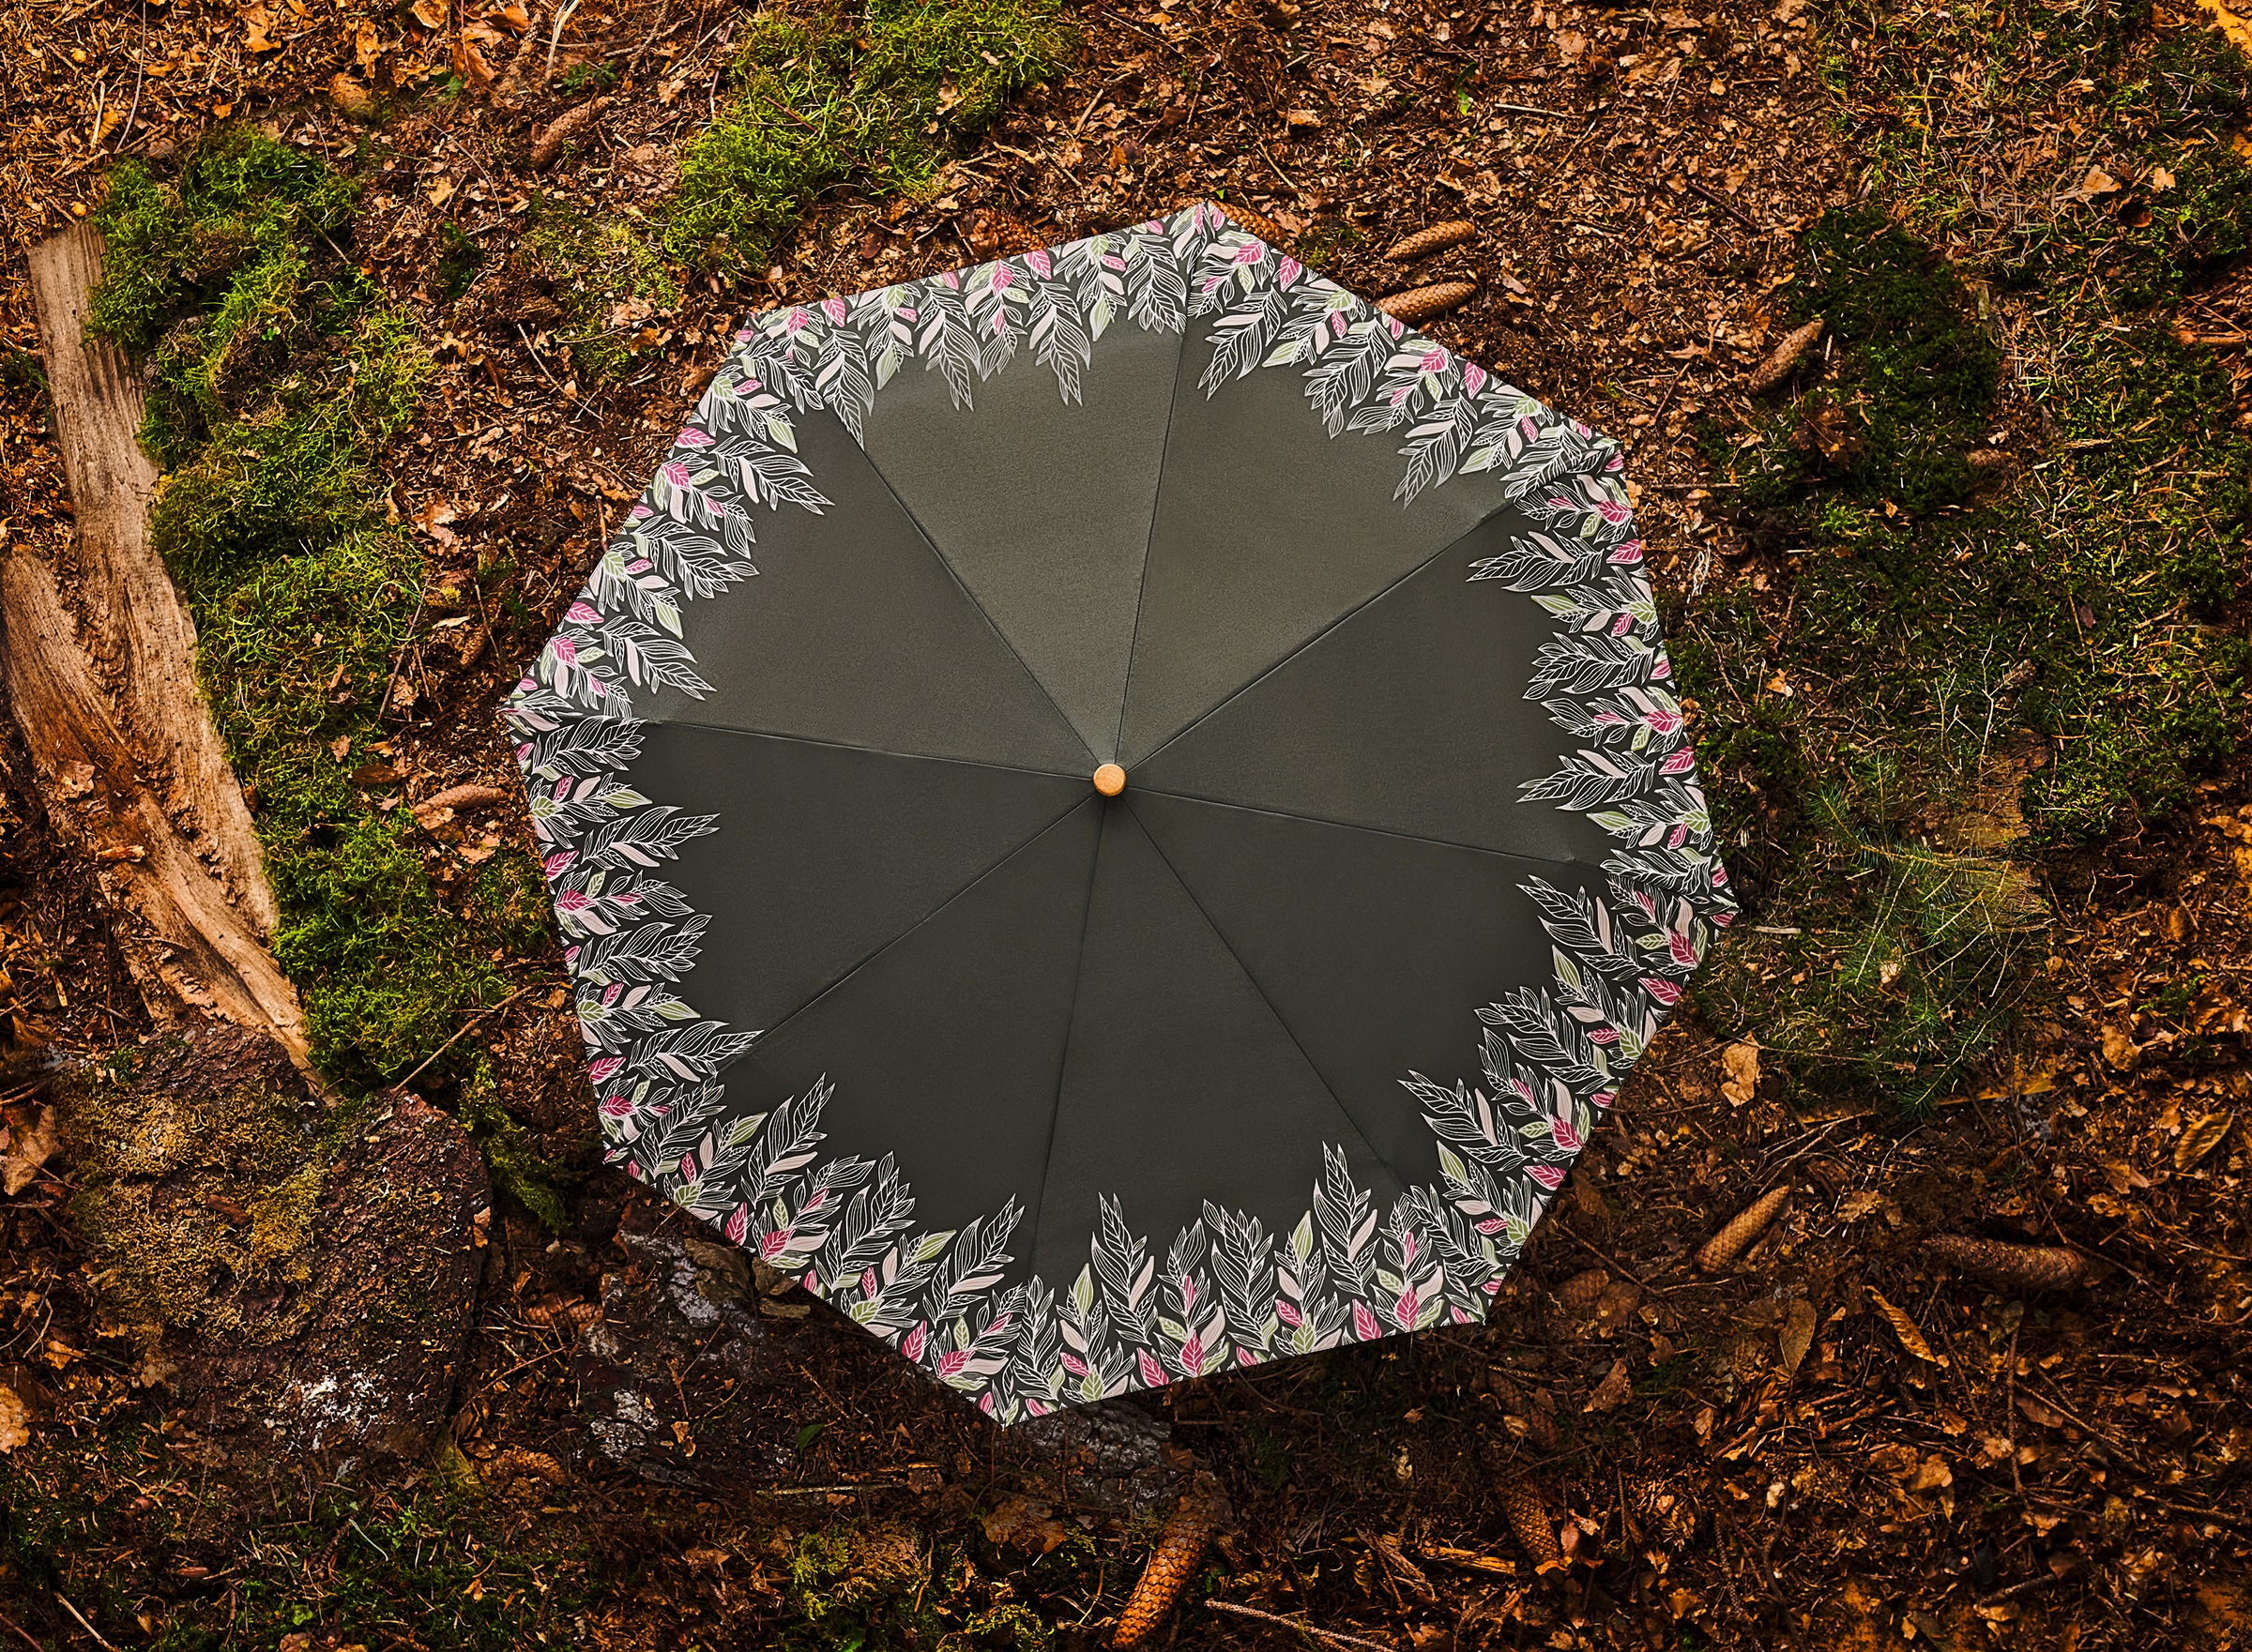 doppler® Taschenregenschirm »nature Magic, intention olive«, aus recyceltem Material mit Griff aus FSC®- schützt Wald - weltweit